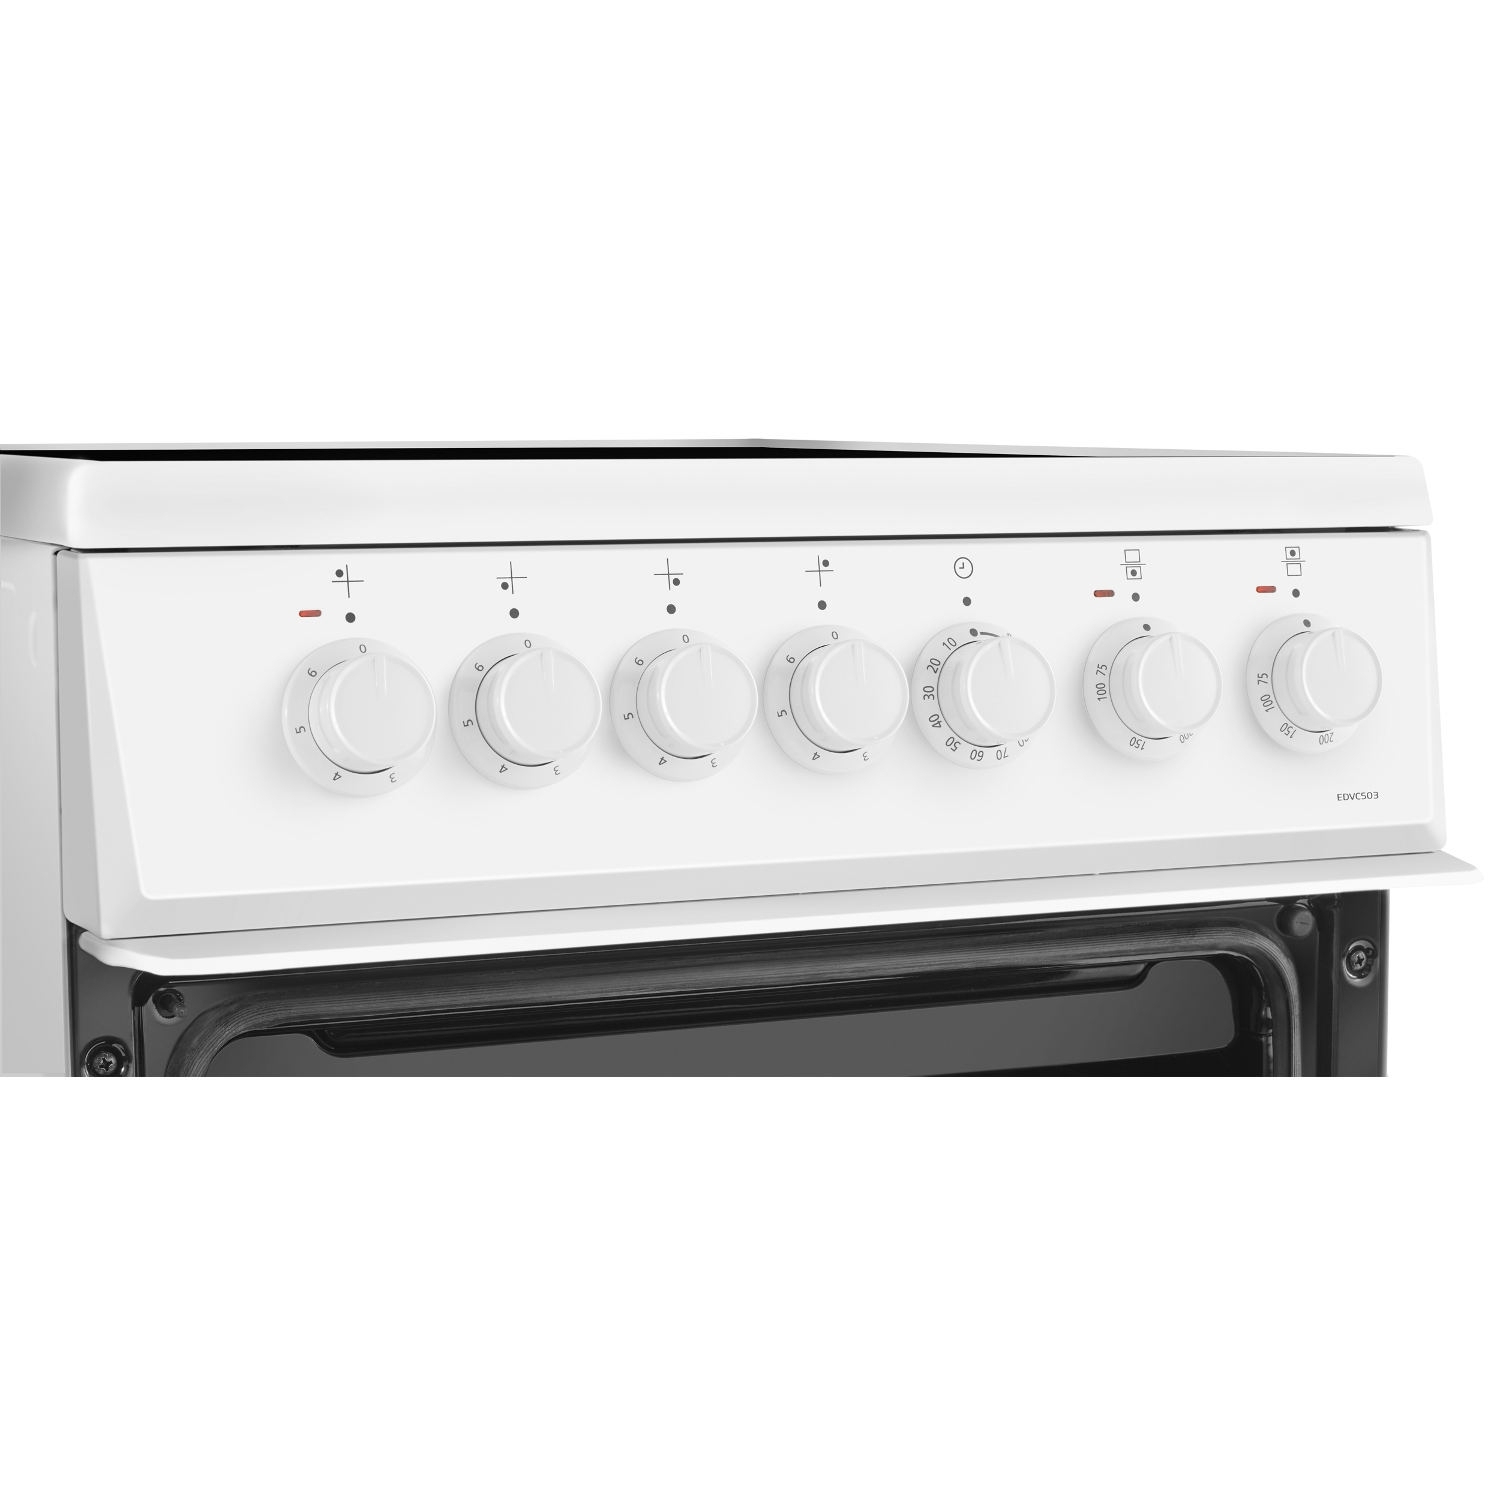 Beko EDVC503W 50cm Electric Double Oven - White - 4